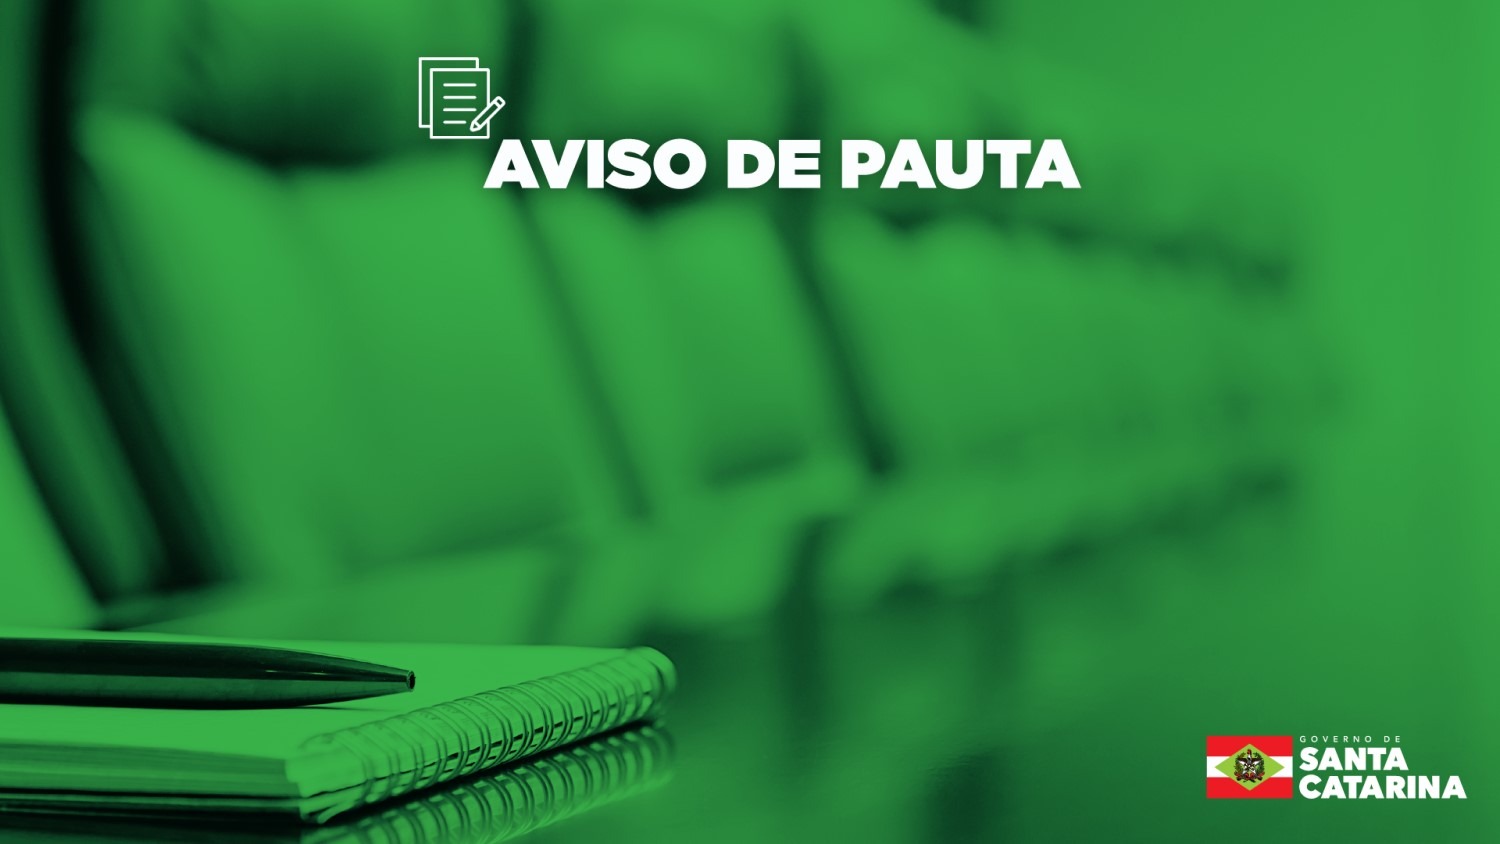 AVISO DE PAUTA: solenidade na SSP tem entrega de medalhas e assinatura de decreto para organizar demanda de transporte da área social